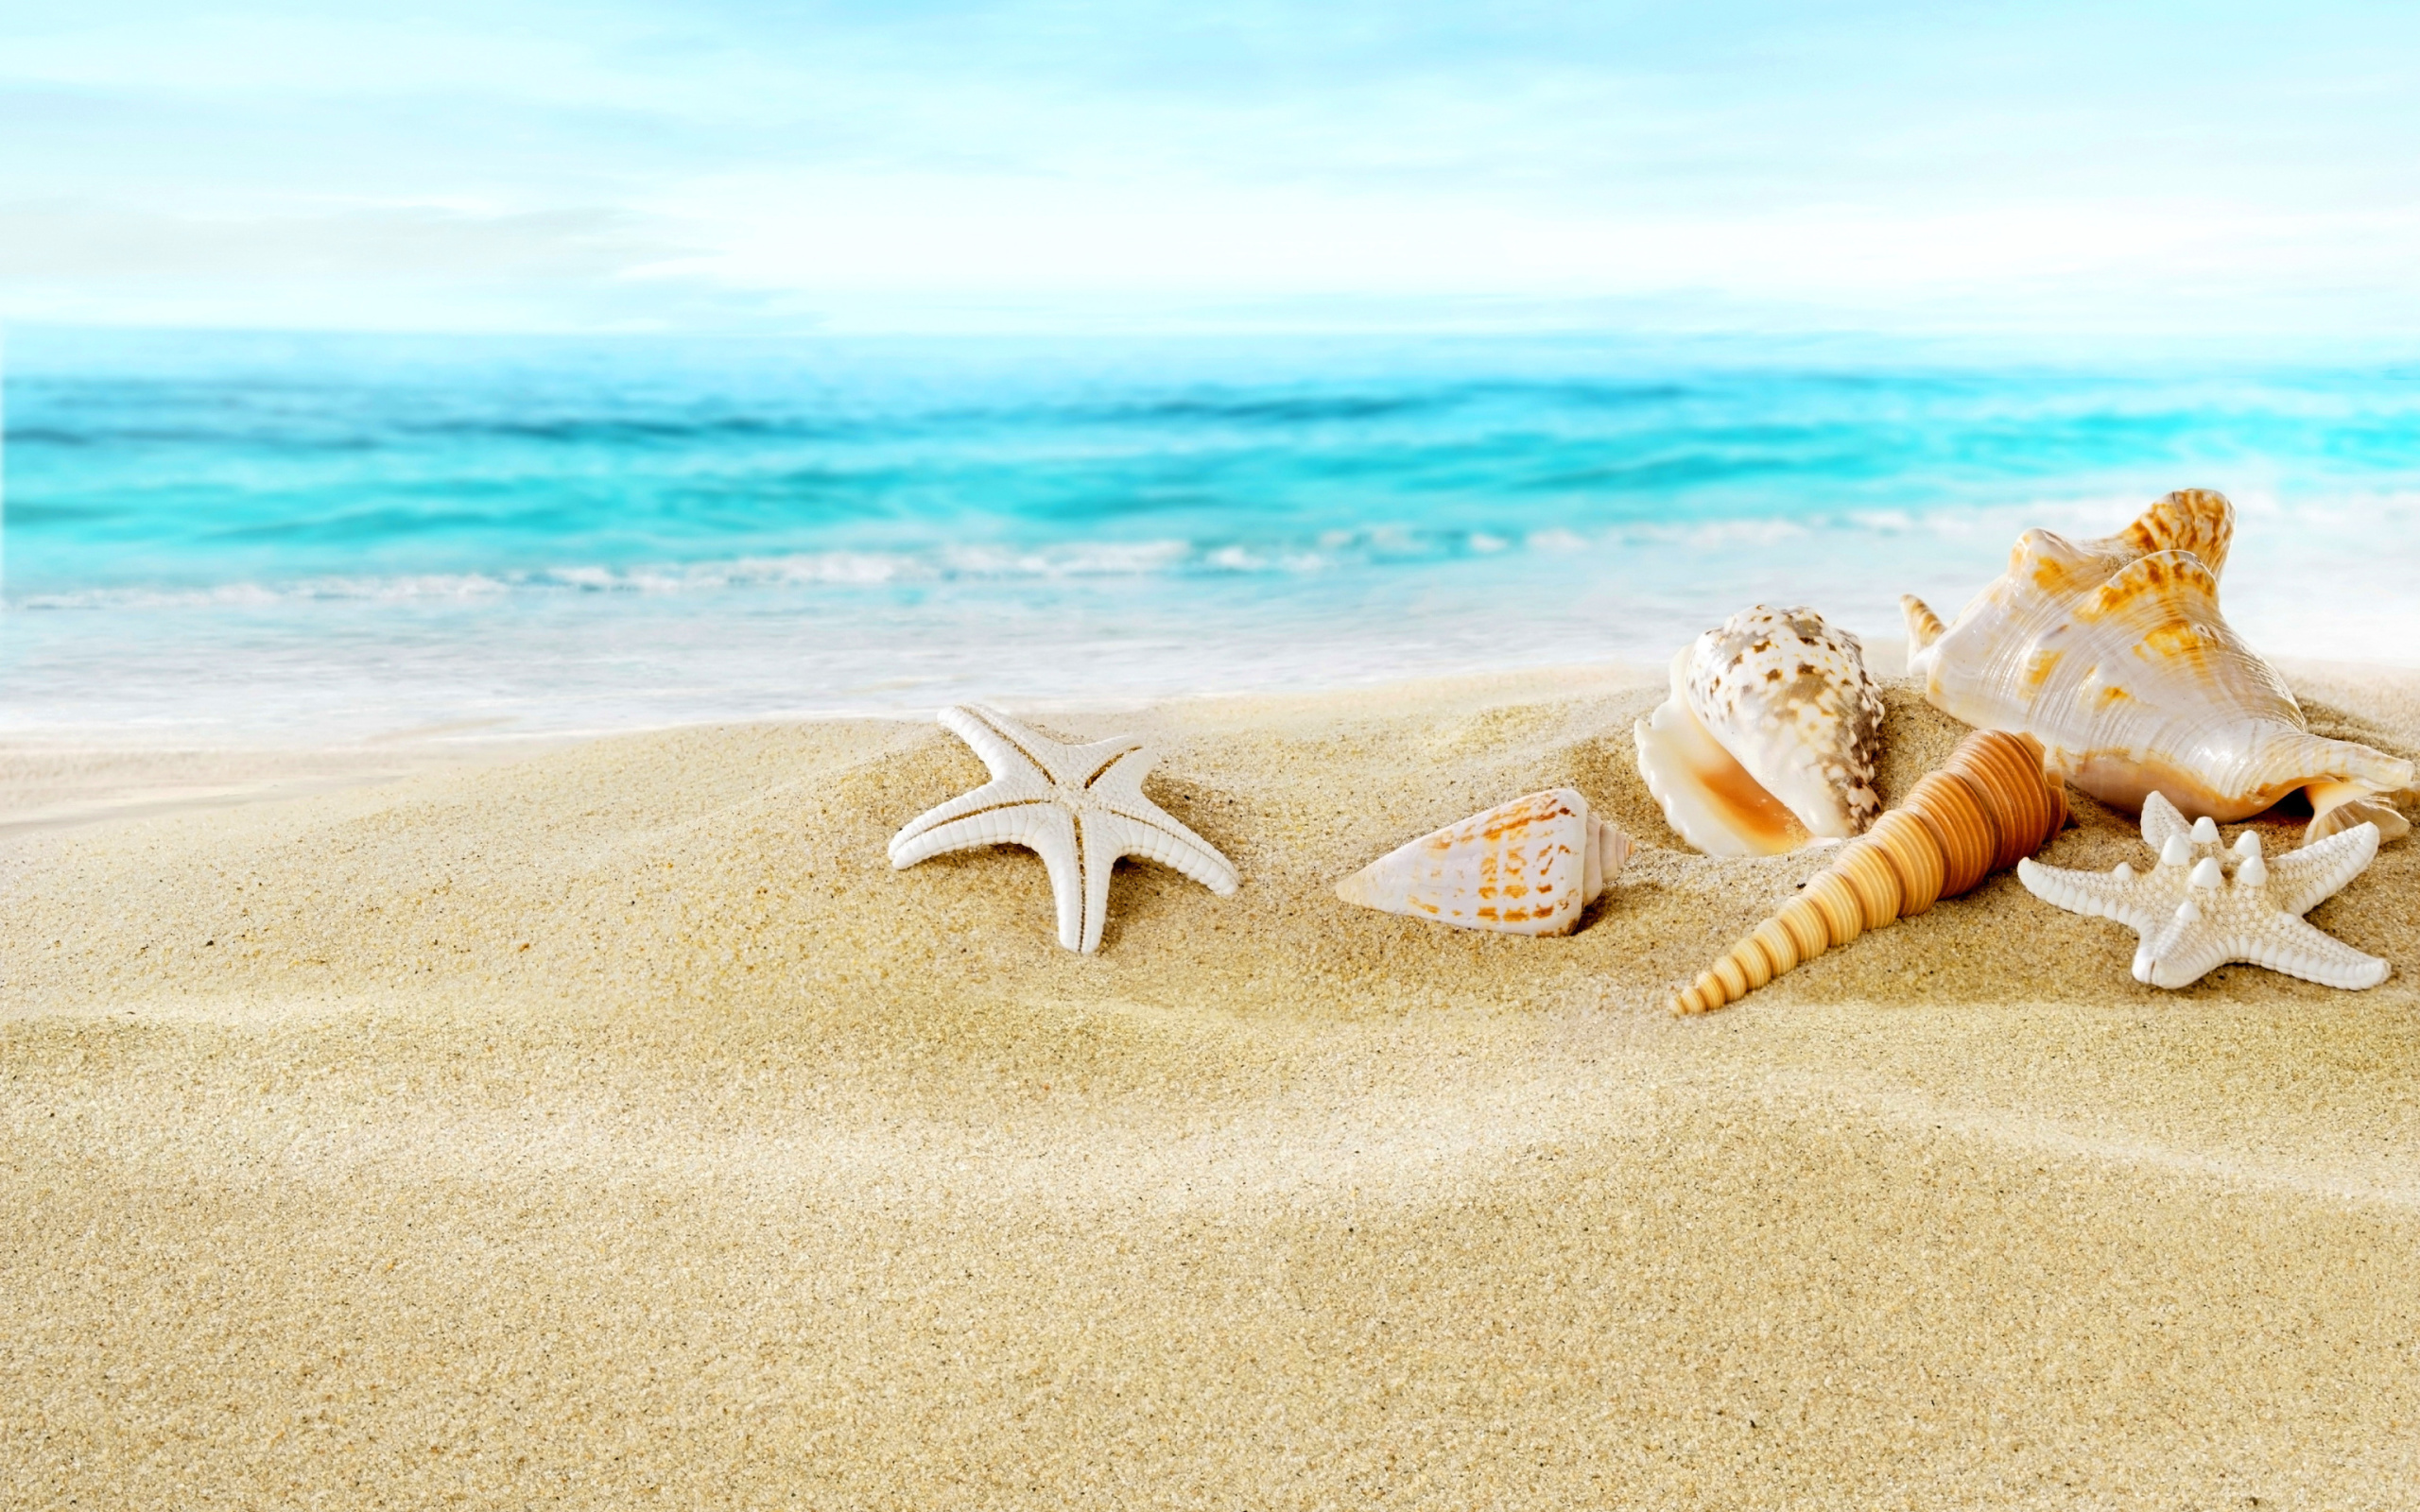 Обои Seashells on Sand Beach 2560x1600